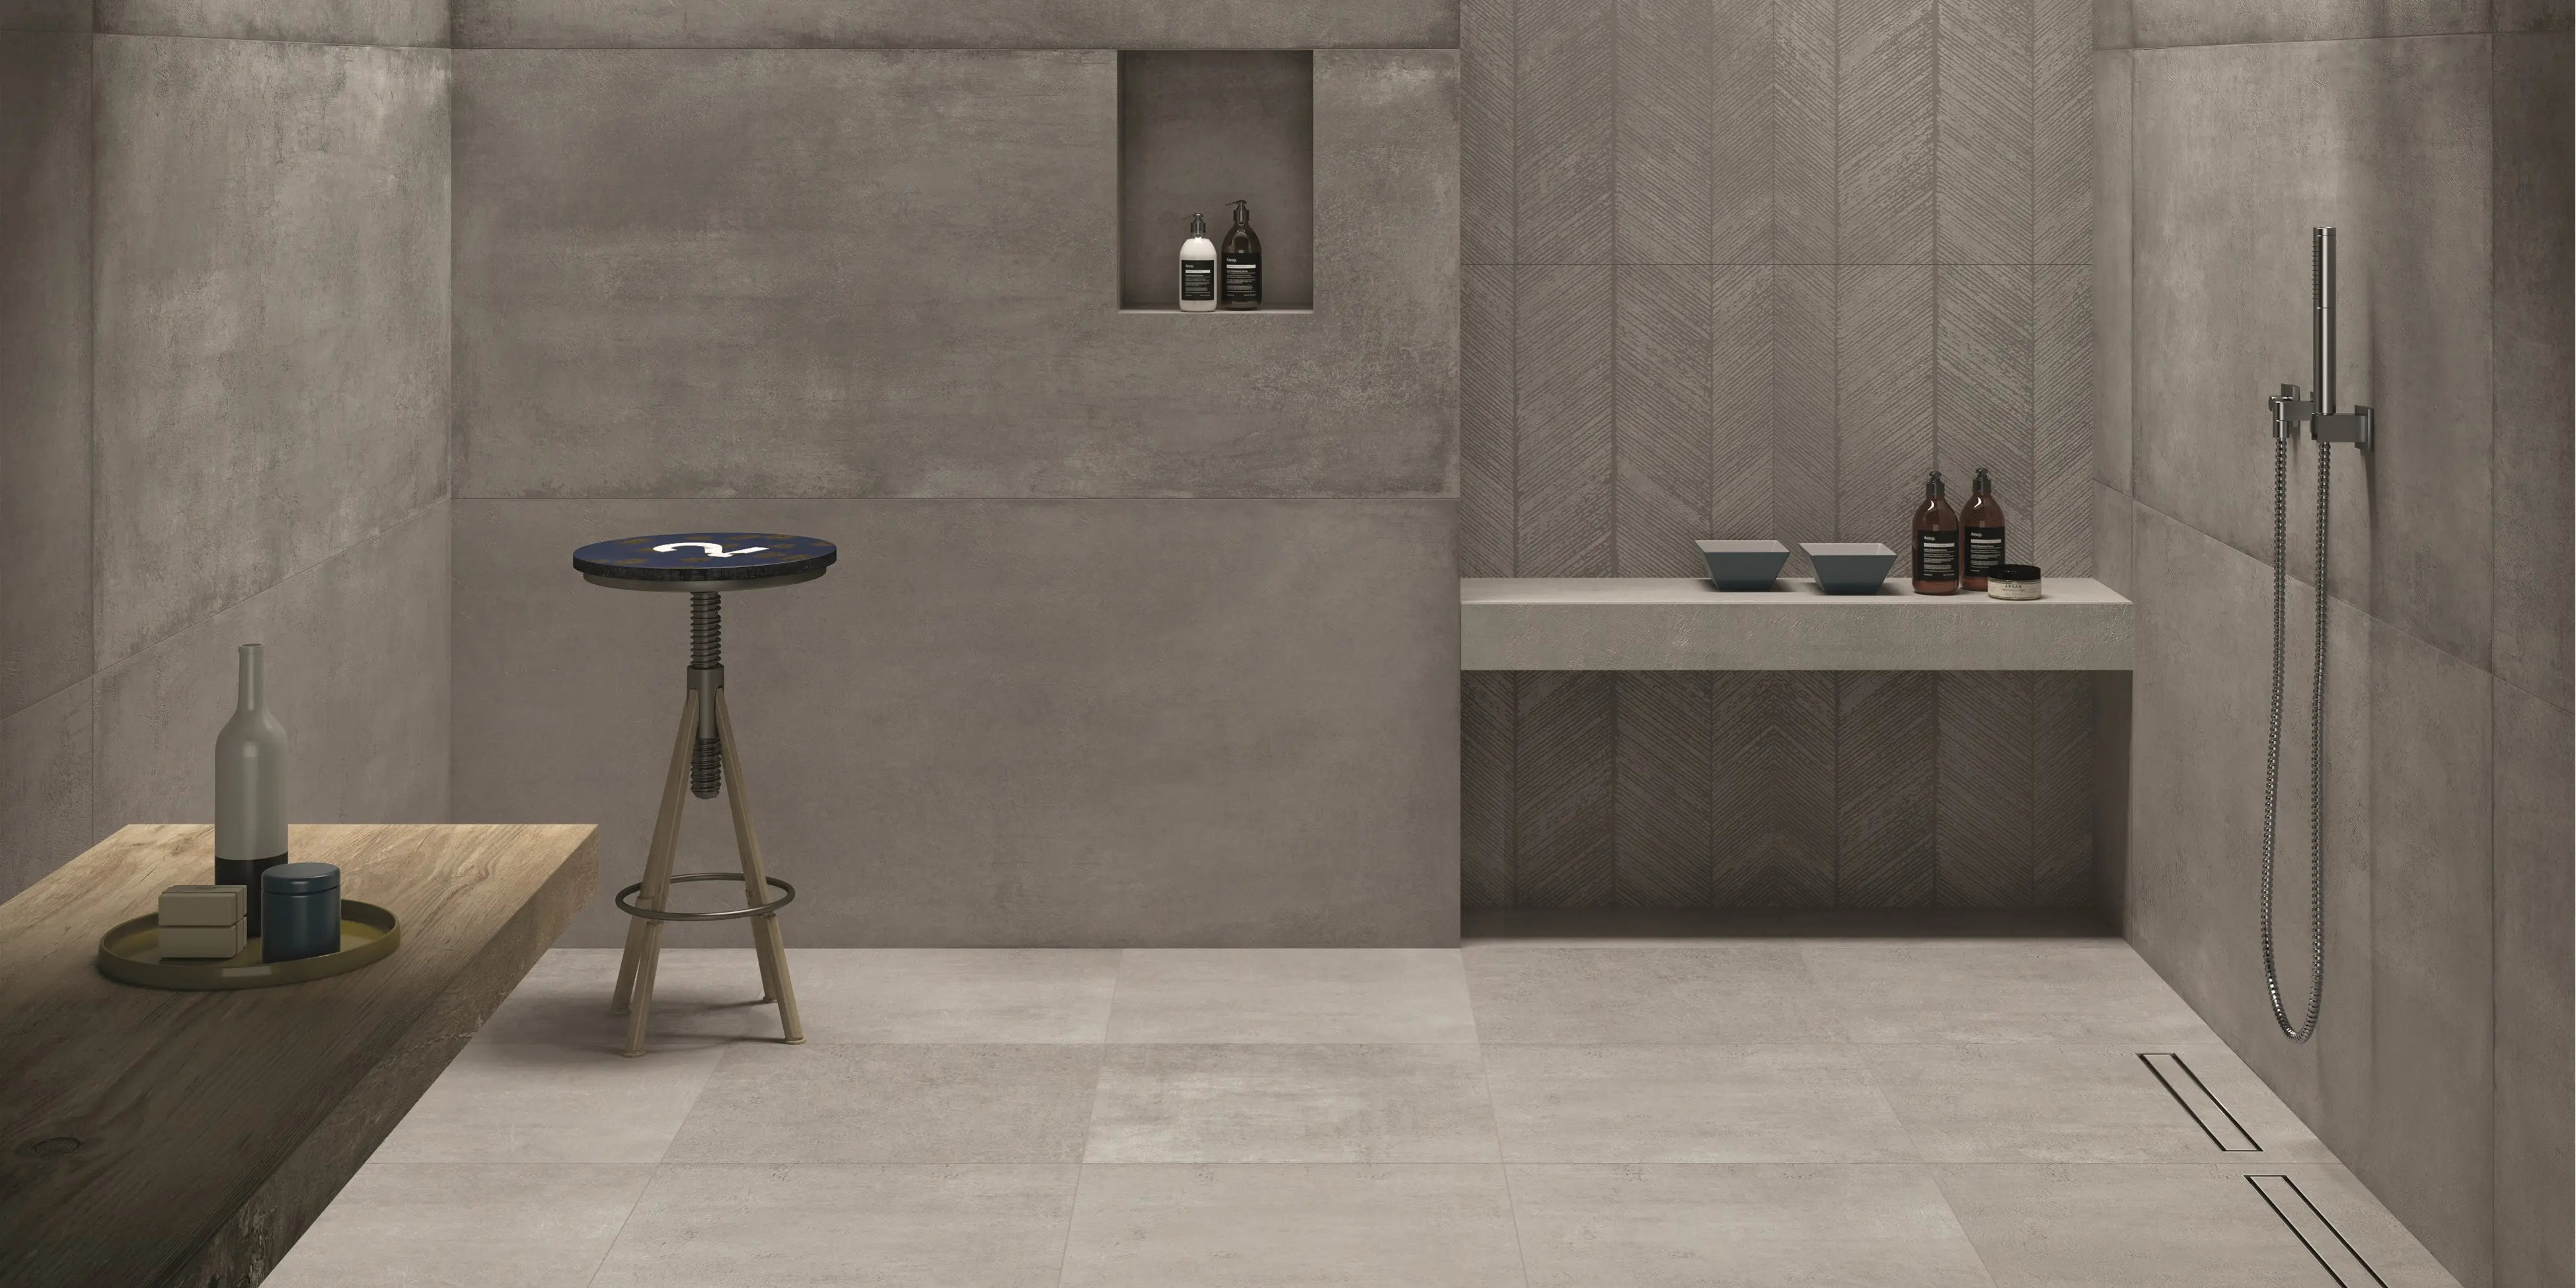 Rå cementlook fliser i 80x180 på væg og 60x60 på gulvet for et moderne urbant udtryk. En bænk af fliser i brusenichen for med badesæbe for et minimalistisk look.